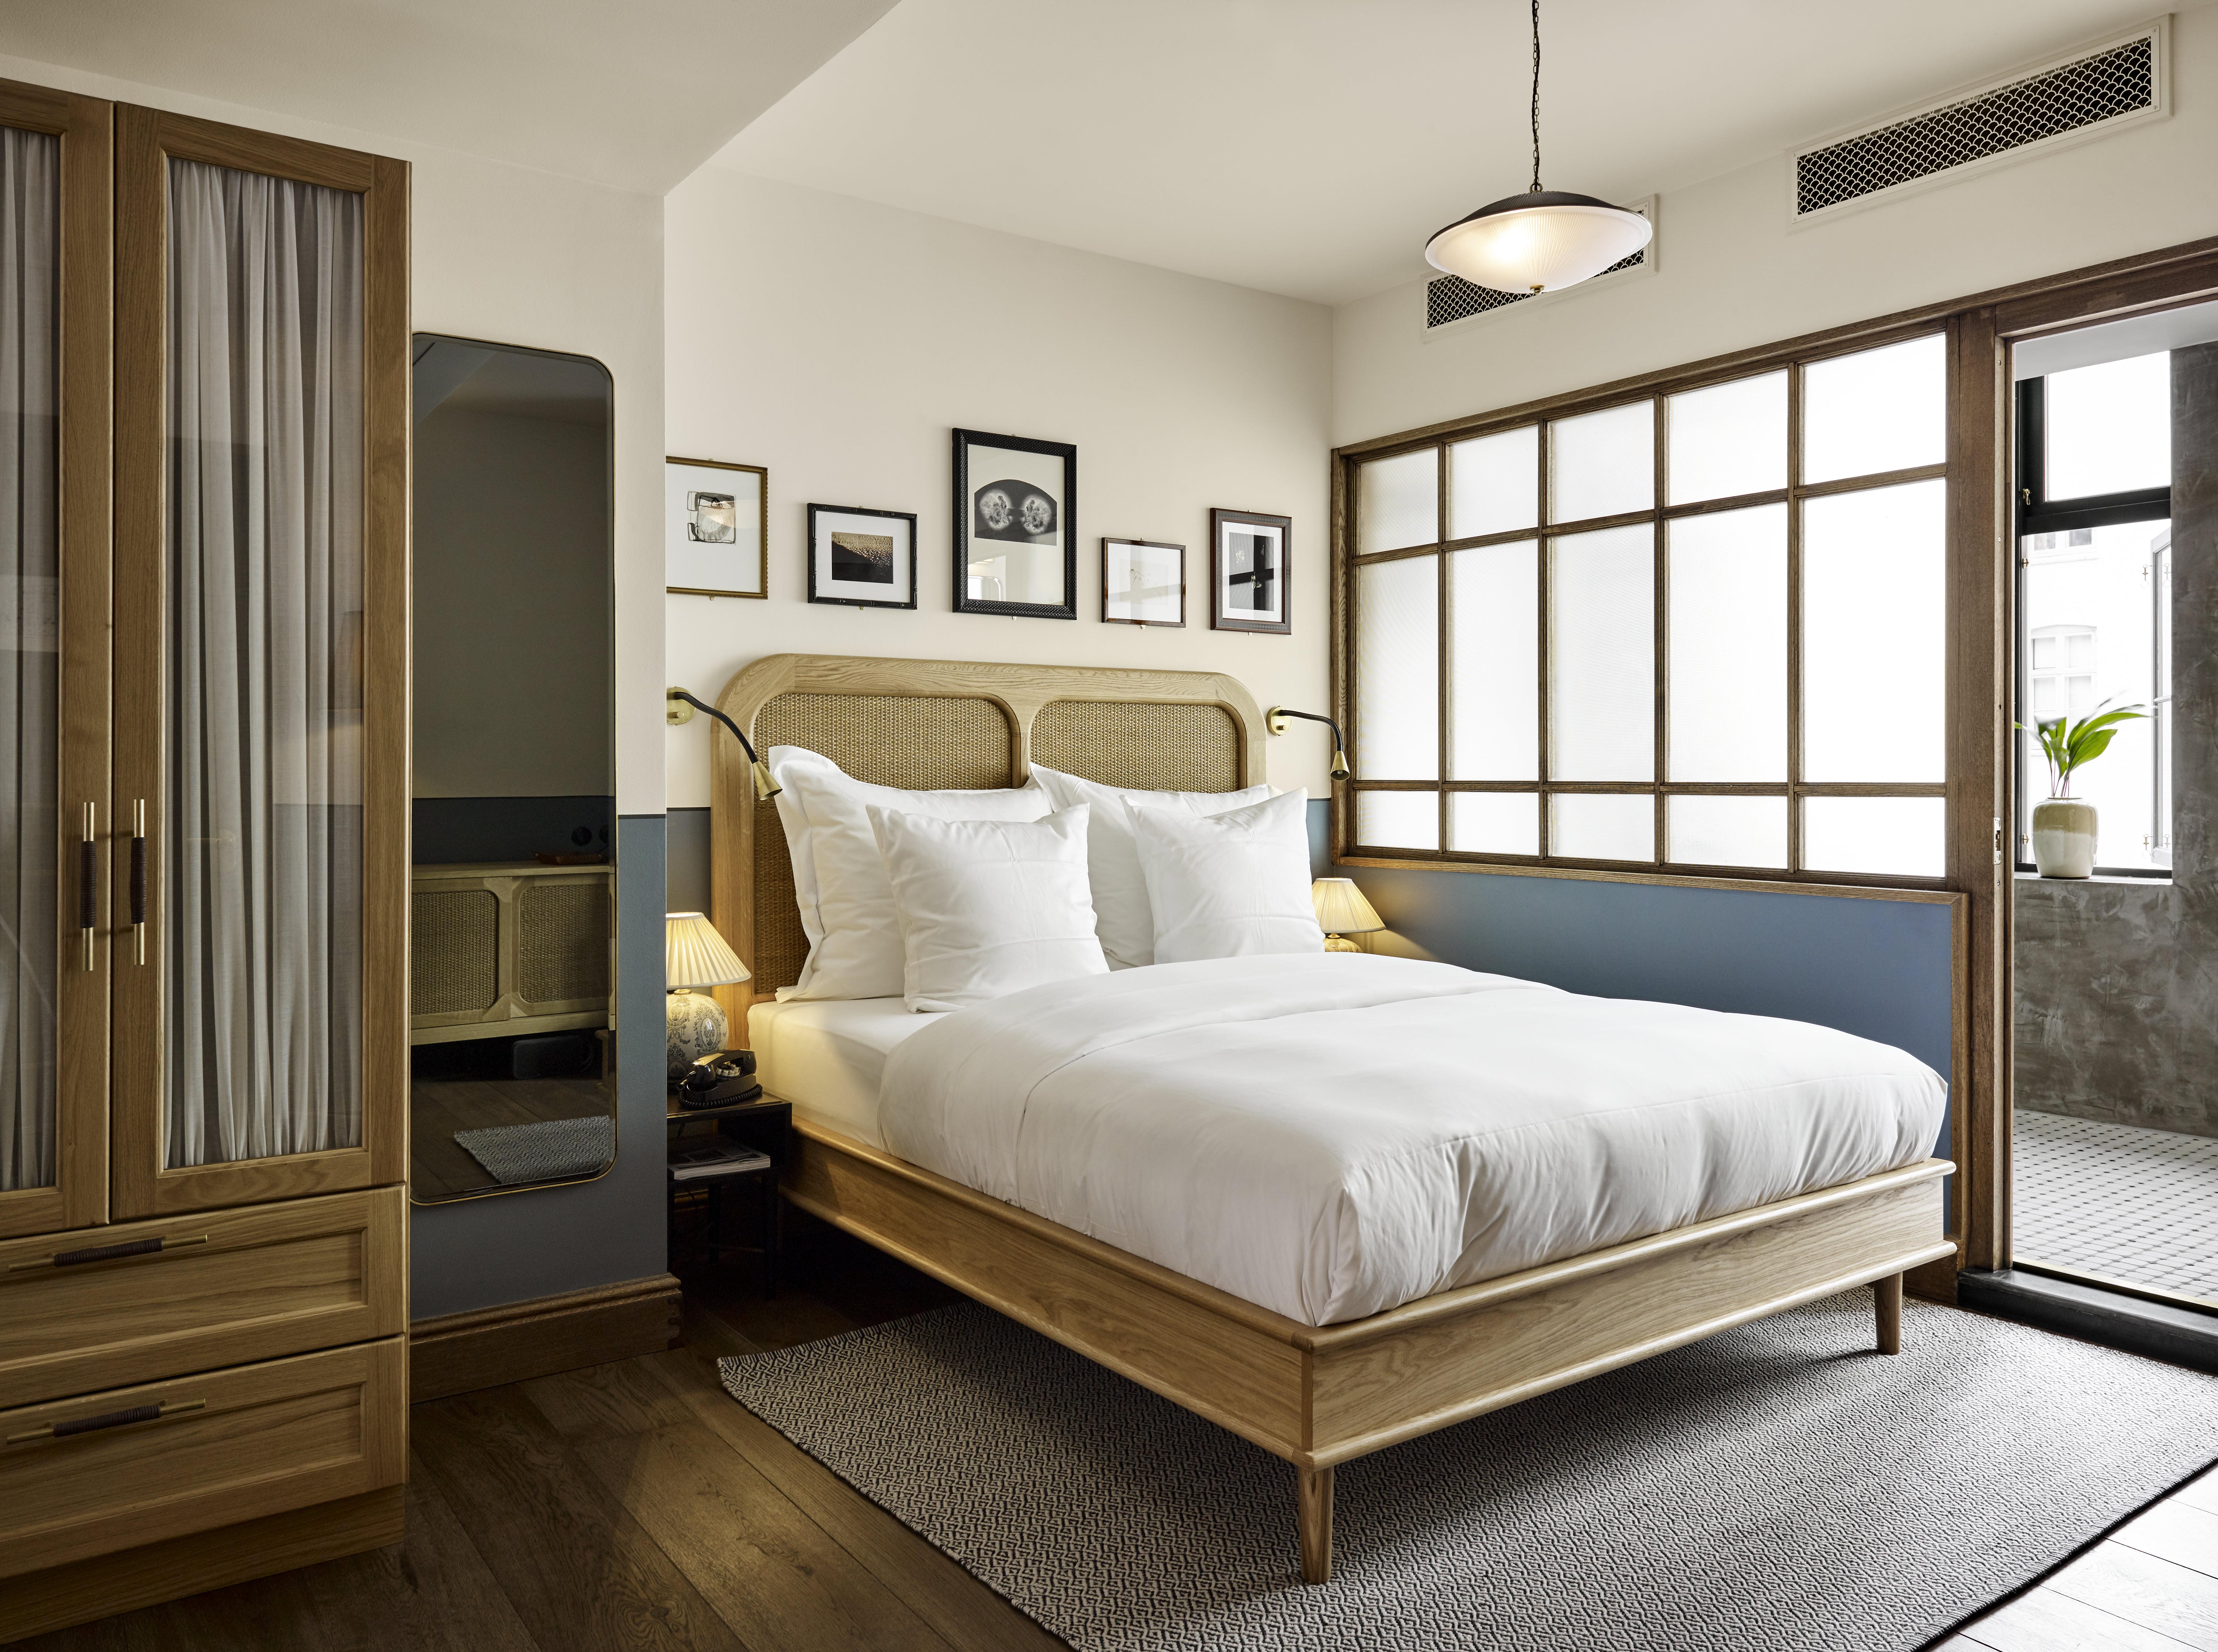 Ein Bett aus europäischer Eiche und Rattan, das speziell für Sanders, Kopenhagens führendes Luxus-Boutique-Hotel, entwickelt wurde.

Erhältlich in sieben Größen und zwei Holztönen. Auf Bestellung in Europa handgefertigt.


---


Euro-Doppel
Kopfteil